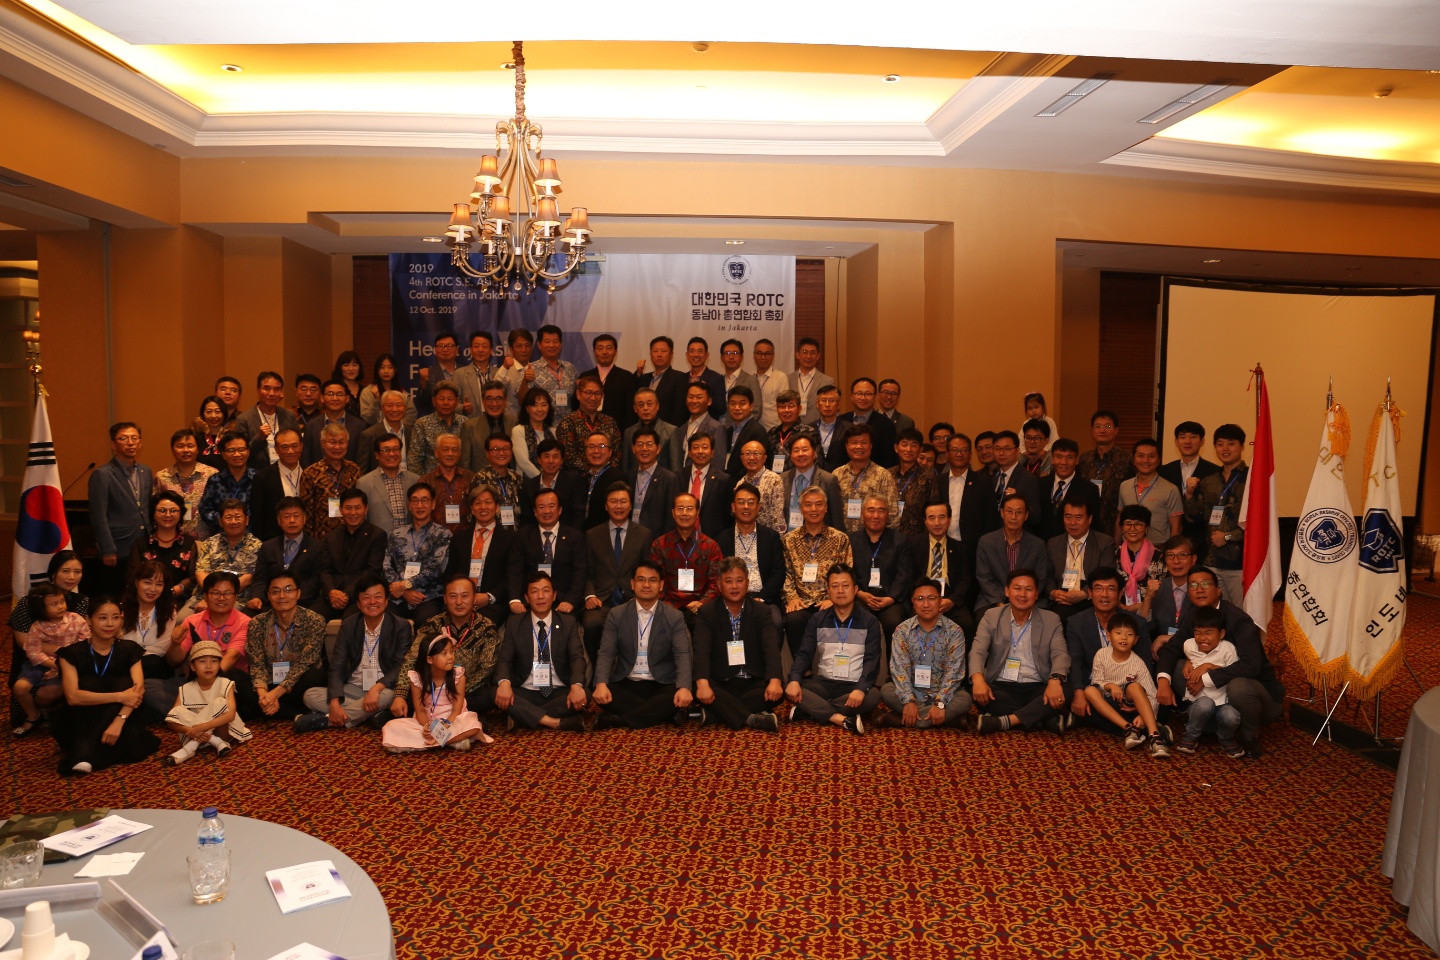 지난 10월 12일 자카르타 소재 리츠칼튼 호텔에서 개최된 ROTC 동남아 대회에 인도네시아지회 회원들을 비롯해 한국 ROTC 중앙회임원단 베트남 싱가포르 말레이시아 홍콩 지회 대표단 등 140여명이 참가했다